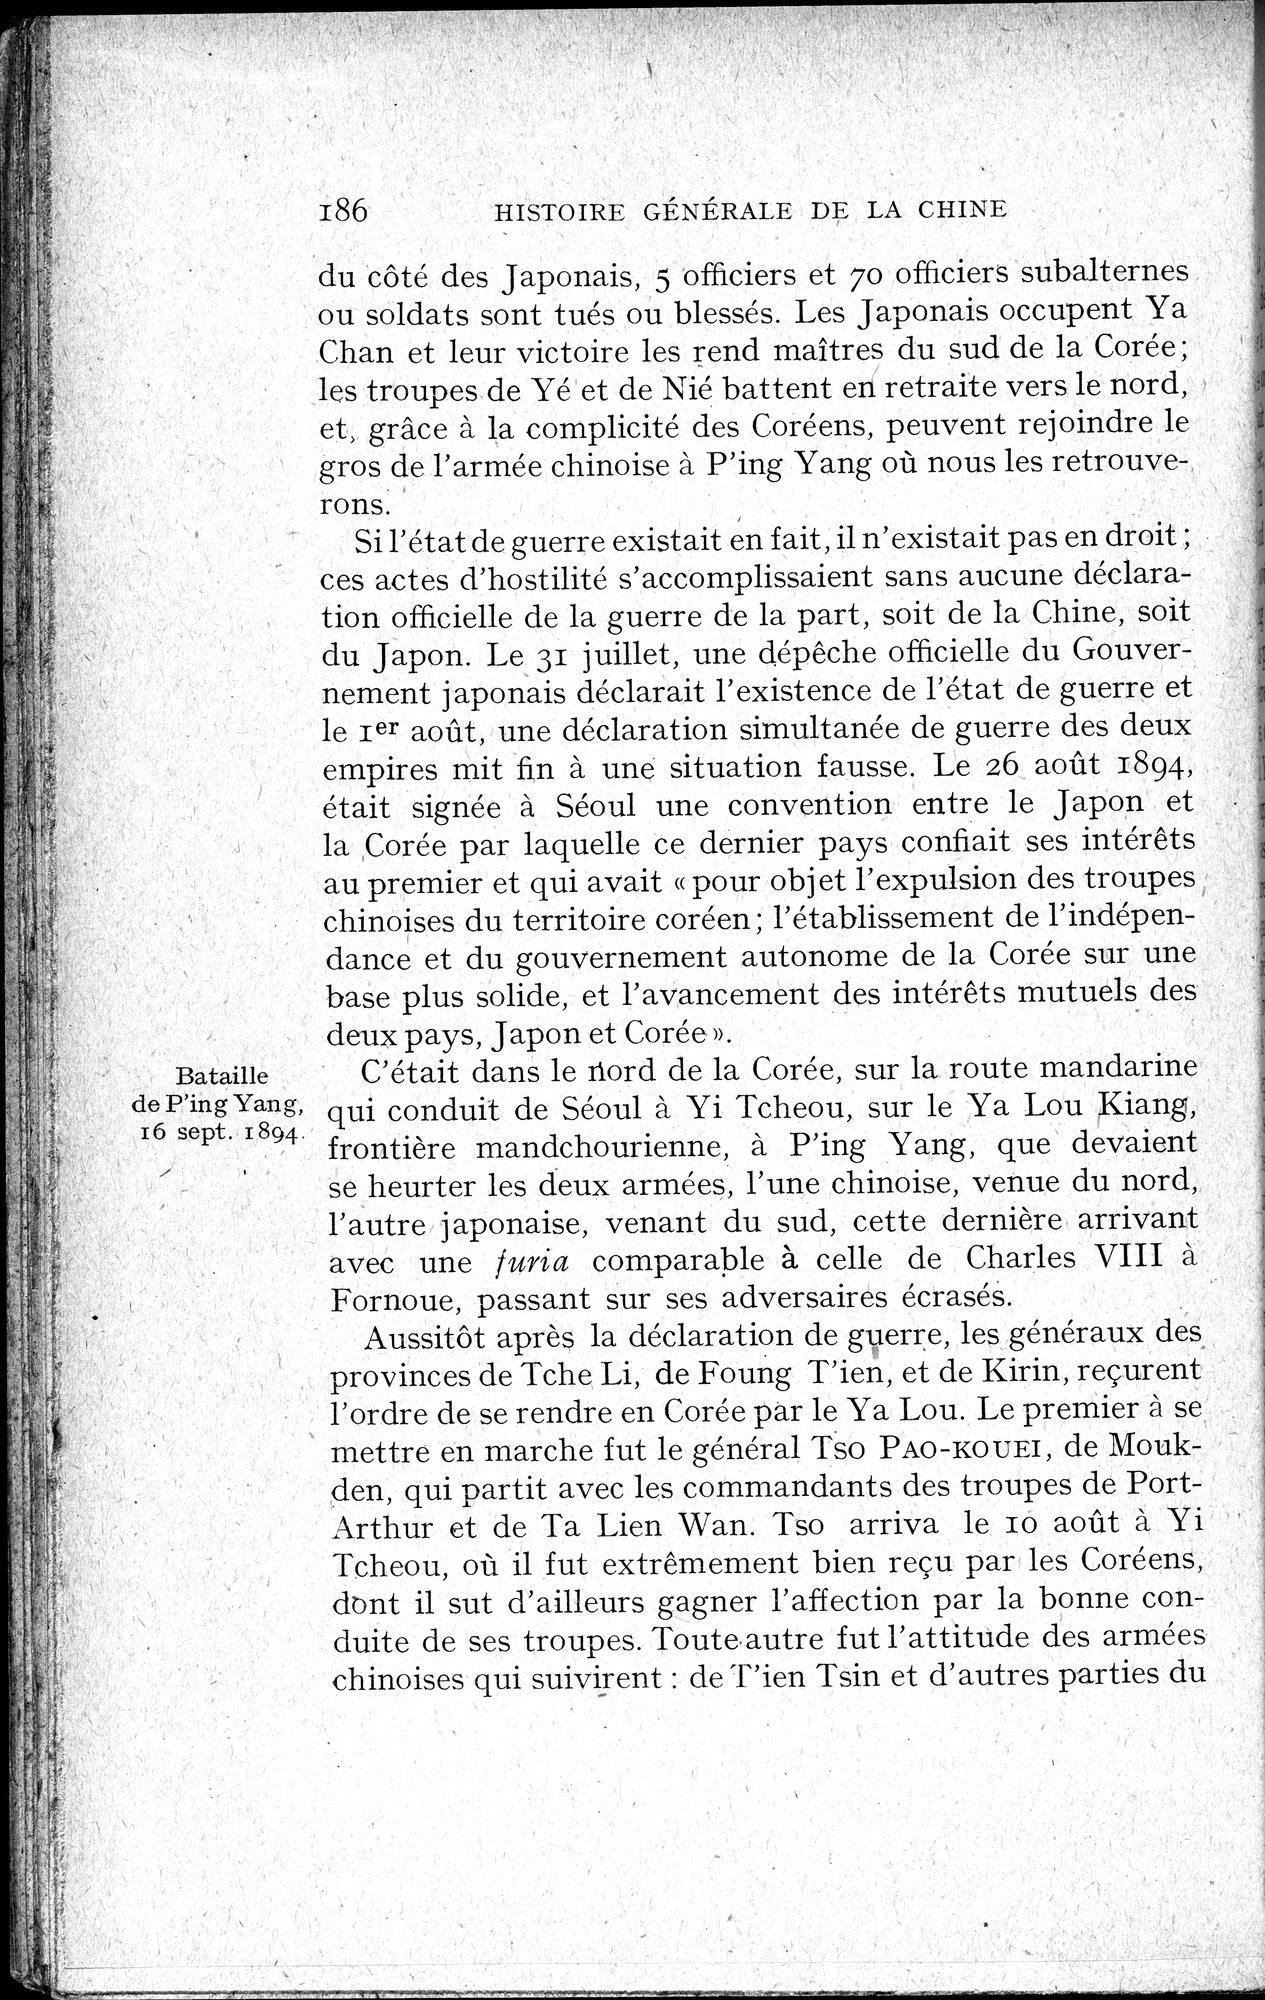 Histoire Générale de la Chine : vol.4 / Page 188 (Grayscale High Resolution Image)